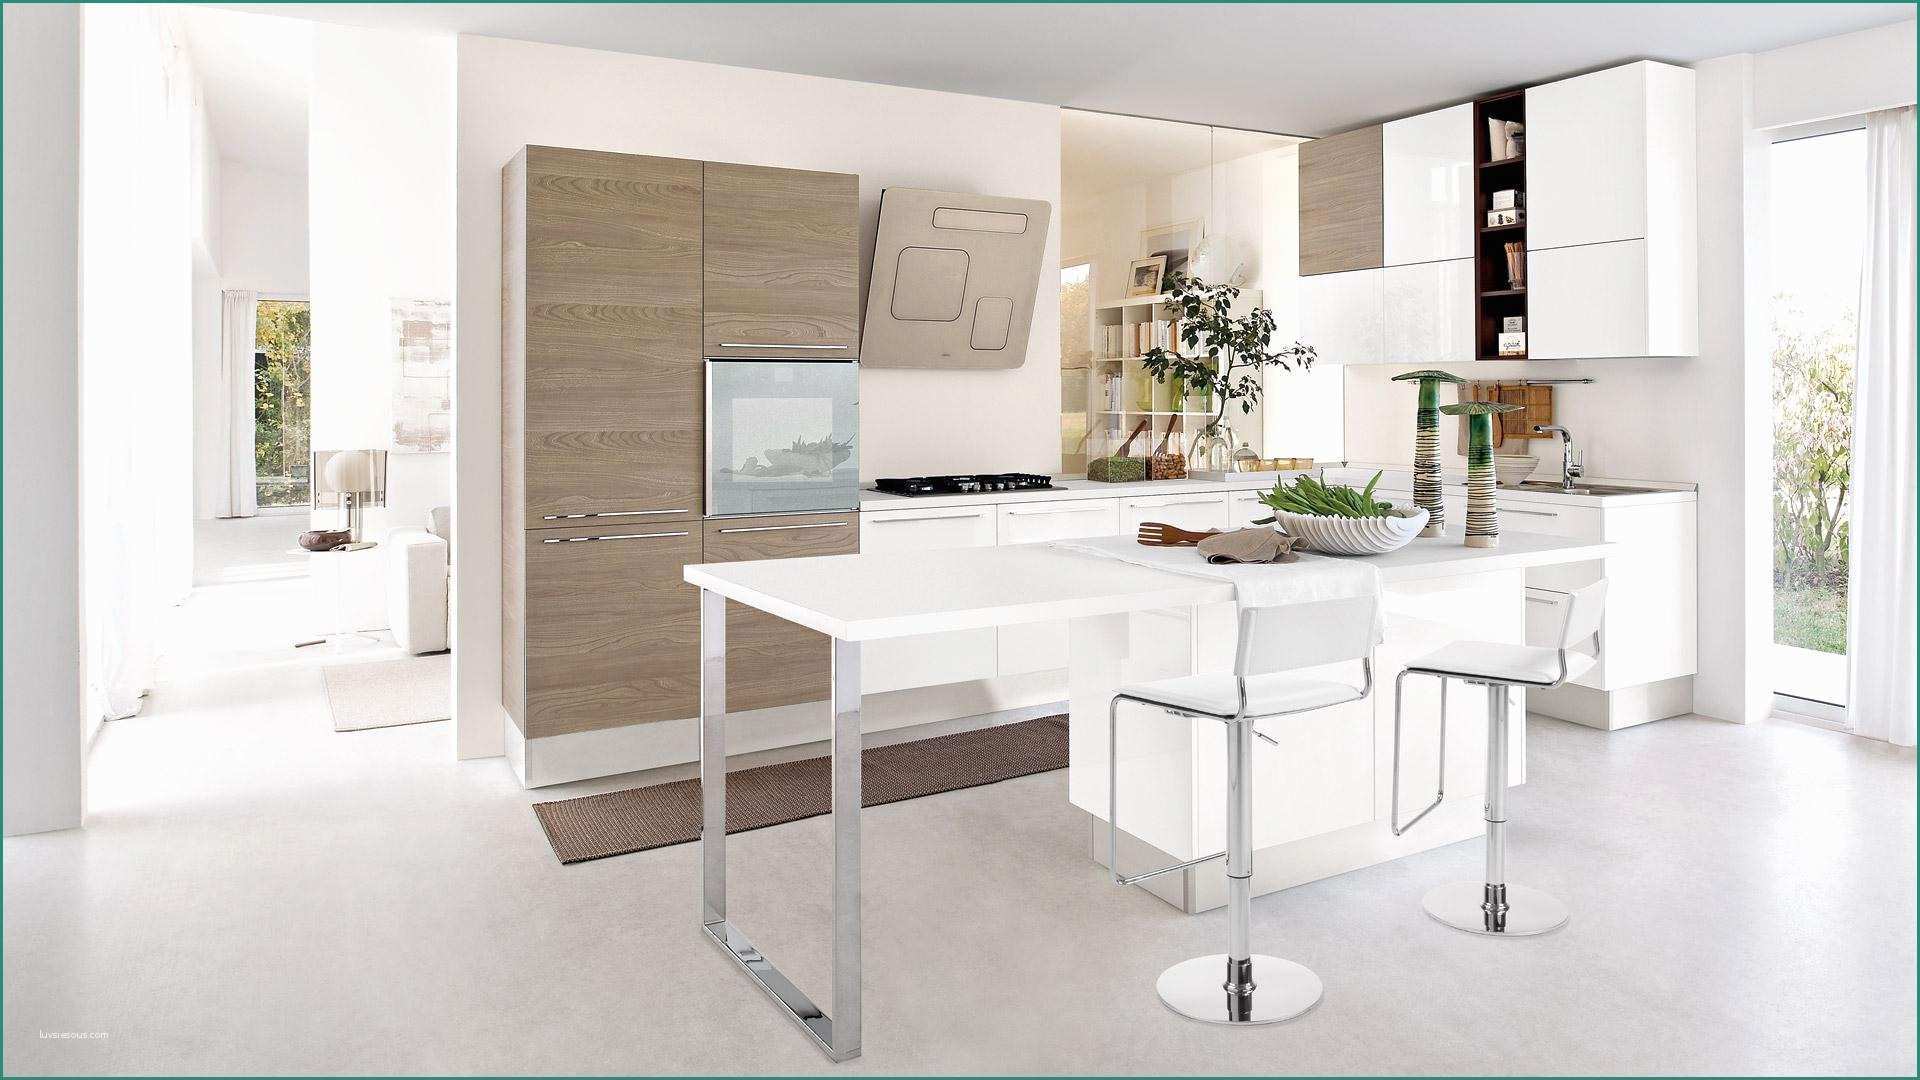 Arredamento Cucine Piccole E Cucine Piccole Dimensioni Design Casa Creativa E Mobili